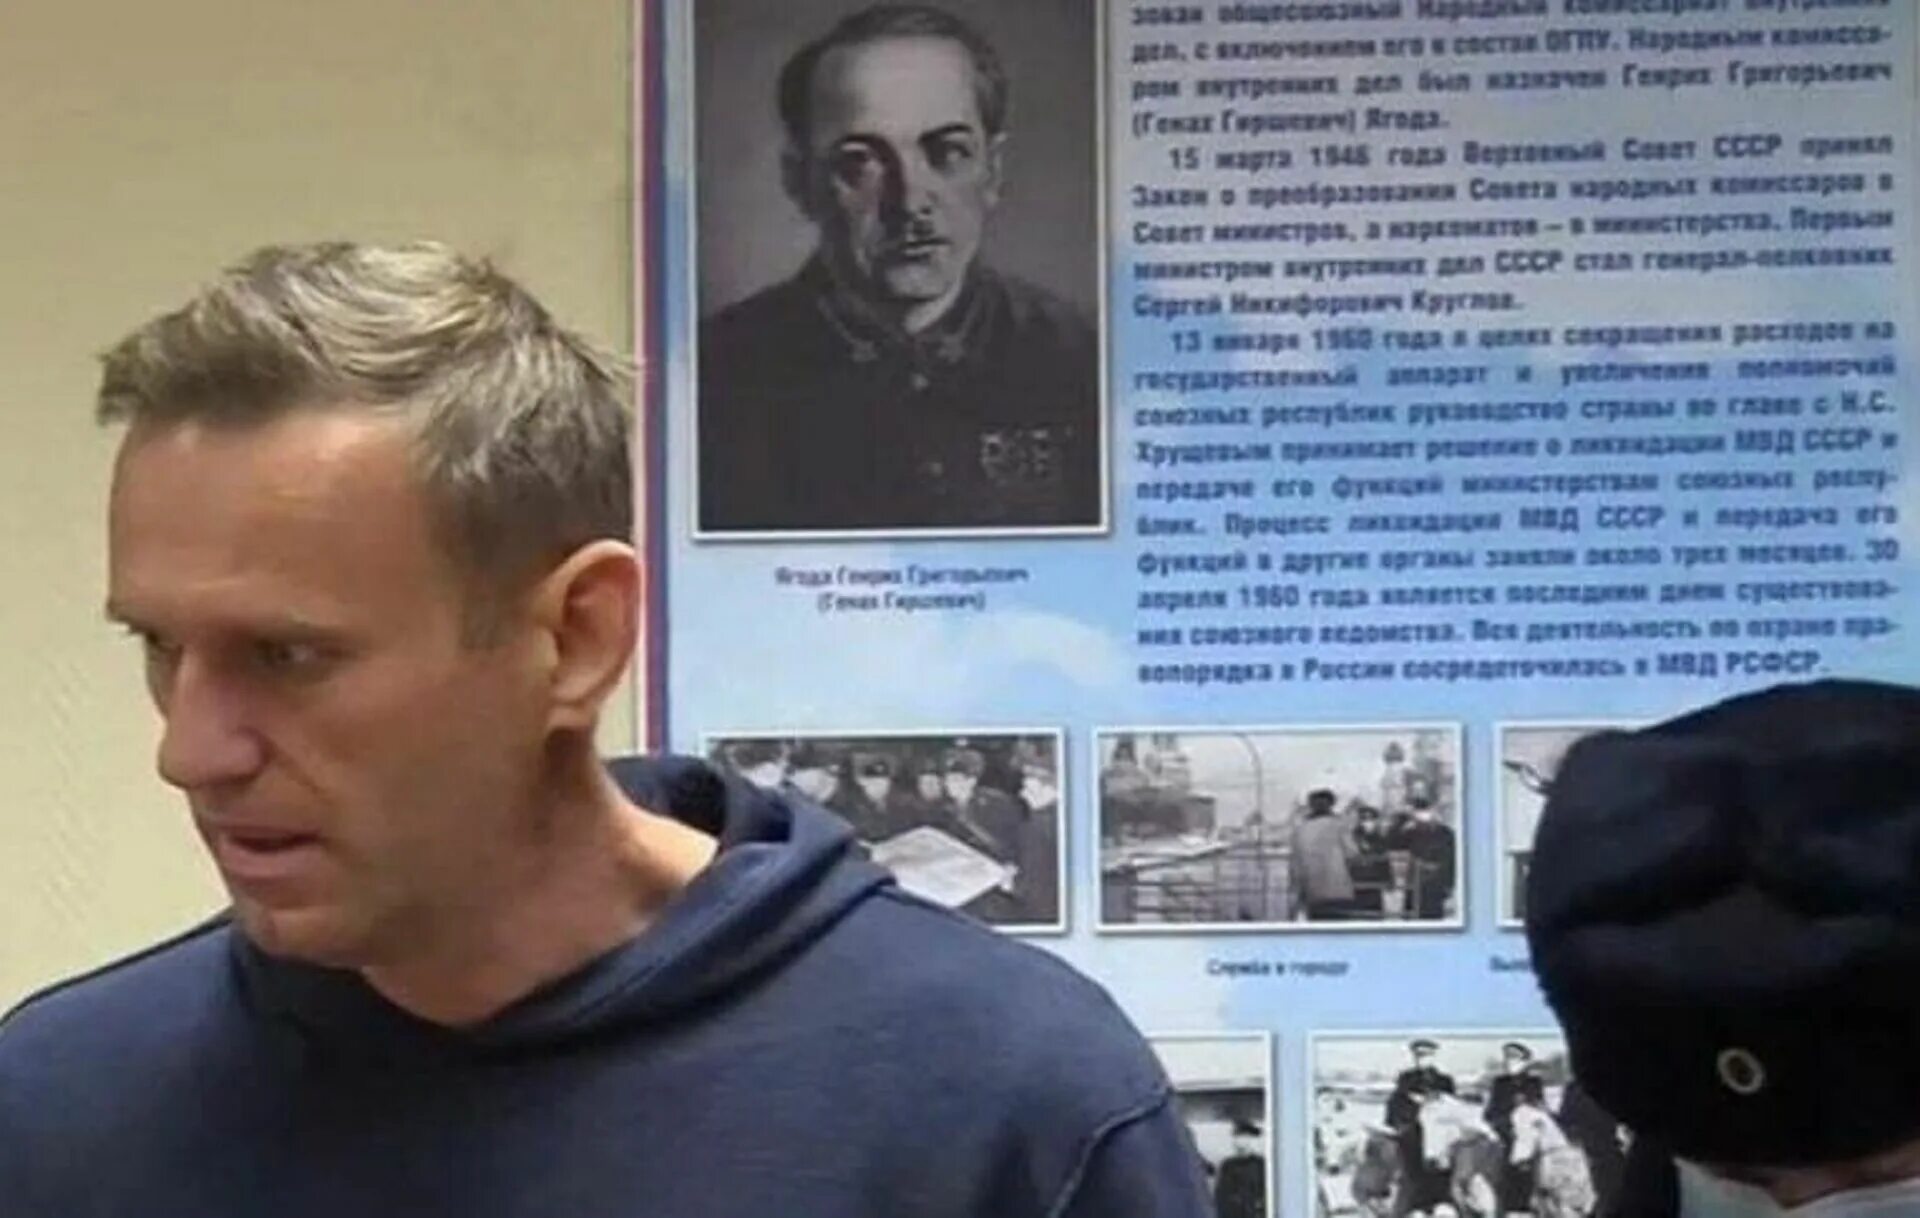 Егода Навальный. Навальный и портрет ягоды. Навальный под портретом ягоды.